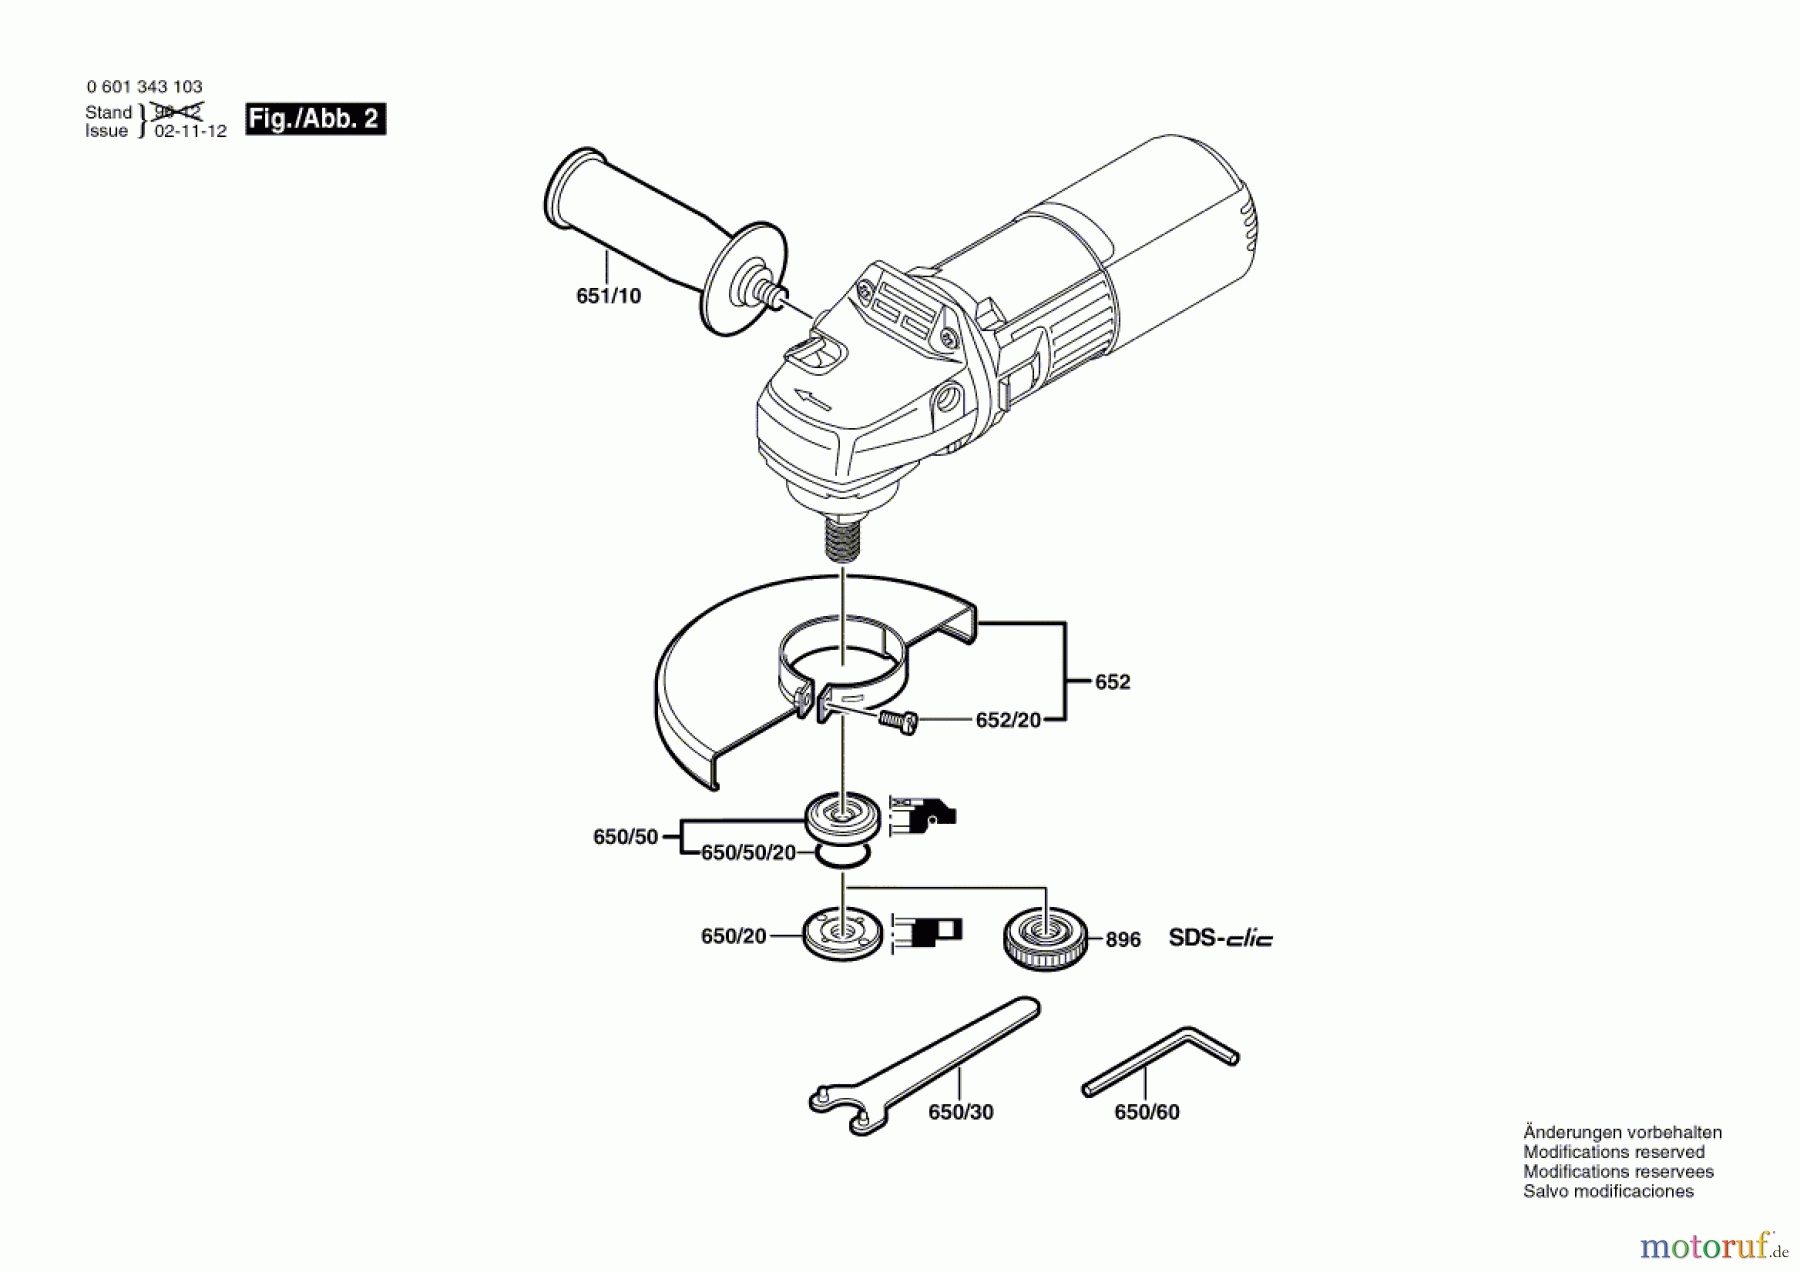  Bosch Werkzeug Winkelschleifer GWS 9-125 CM Seite 2